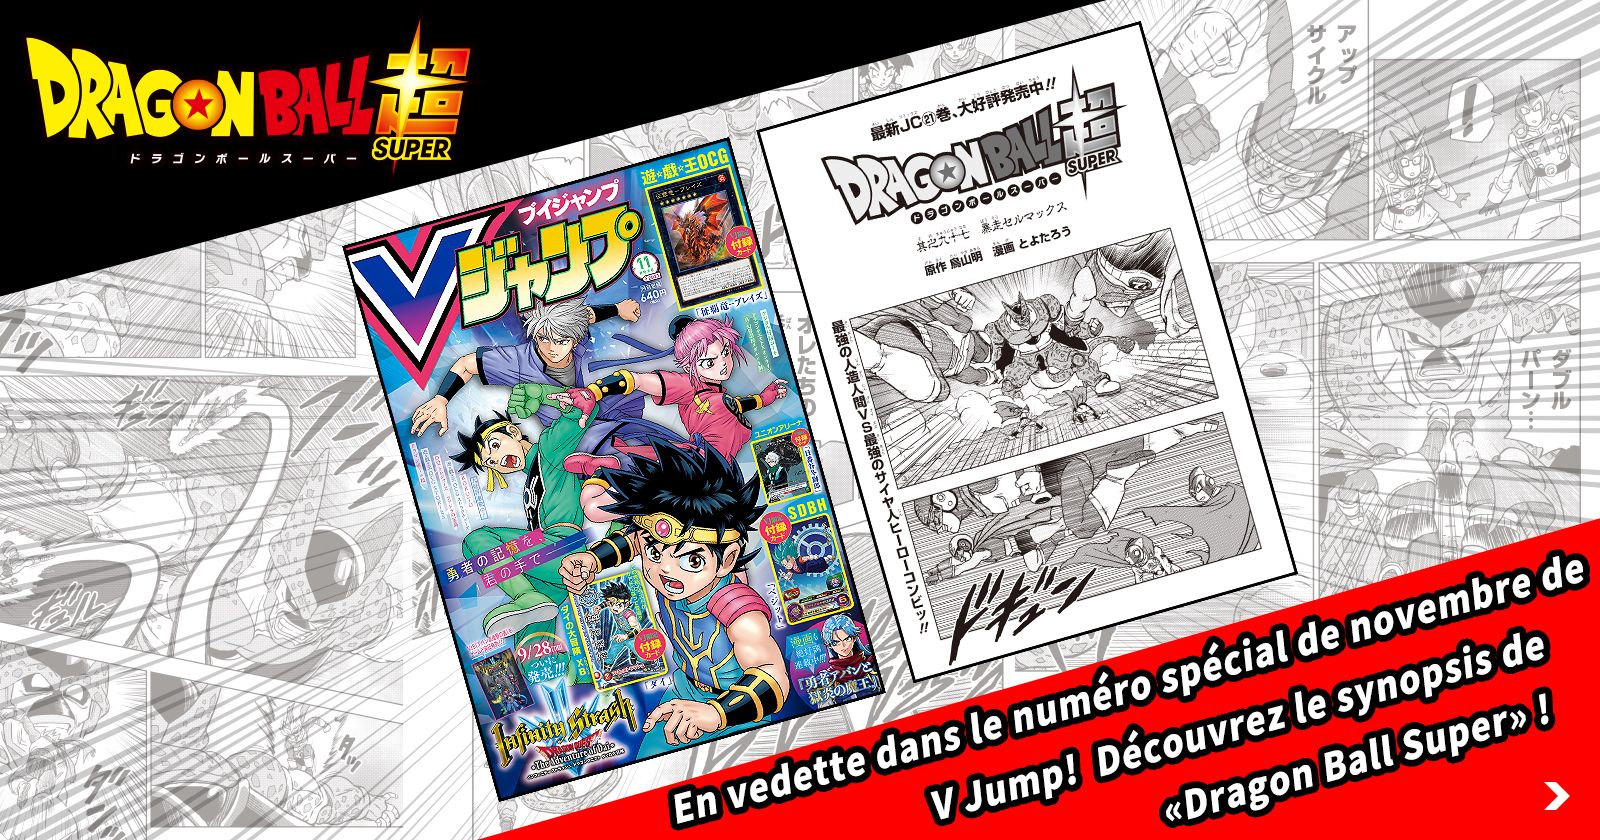  Nouveau chapitre Dragon Ball Super dans l'édition de novembre super-dimensionnée de V Jump ! Découvrez l'histoire jusqu'à présent !